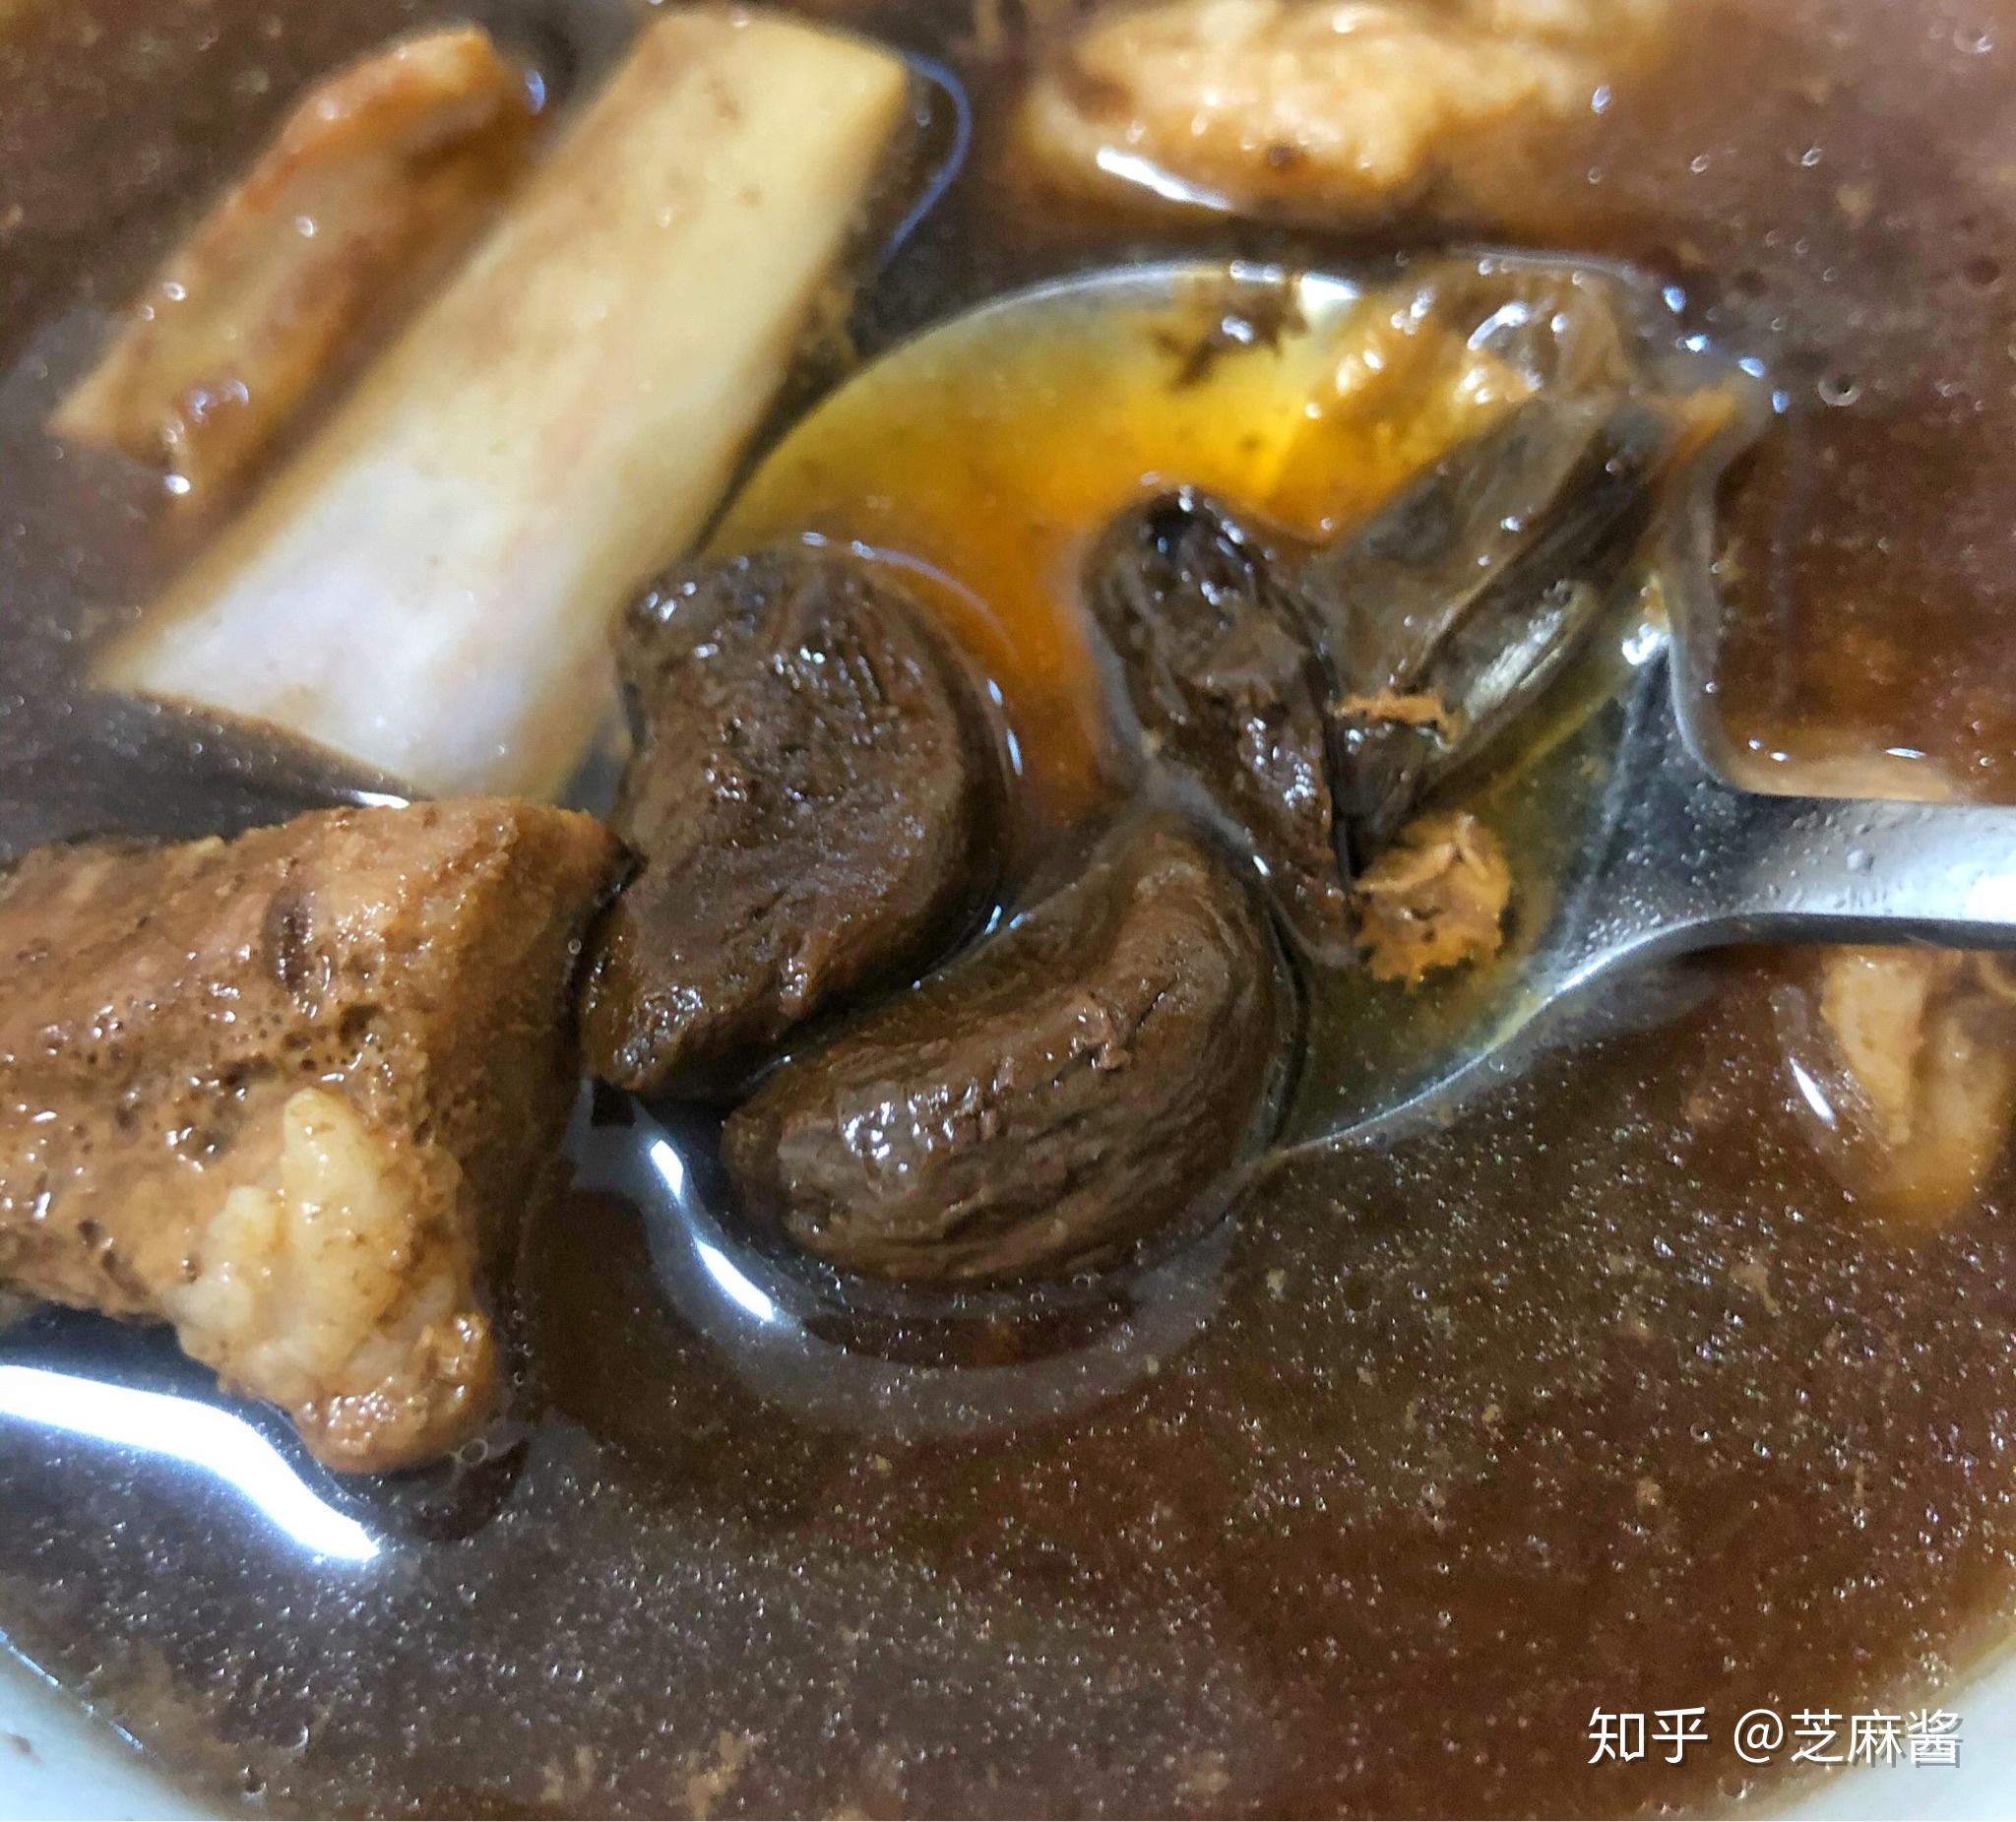 黑蒜雞湯 by 浦維老師的料理廚房 - 愛料理